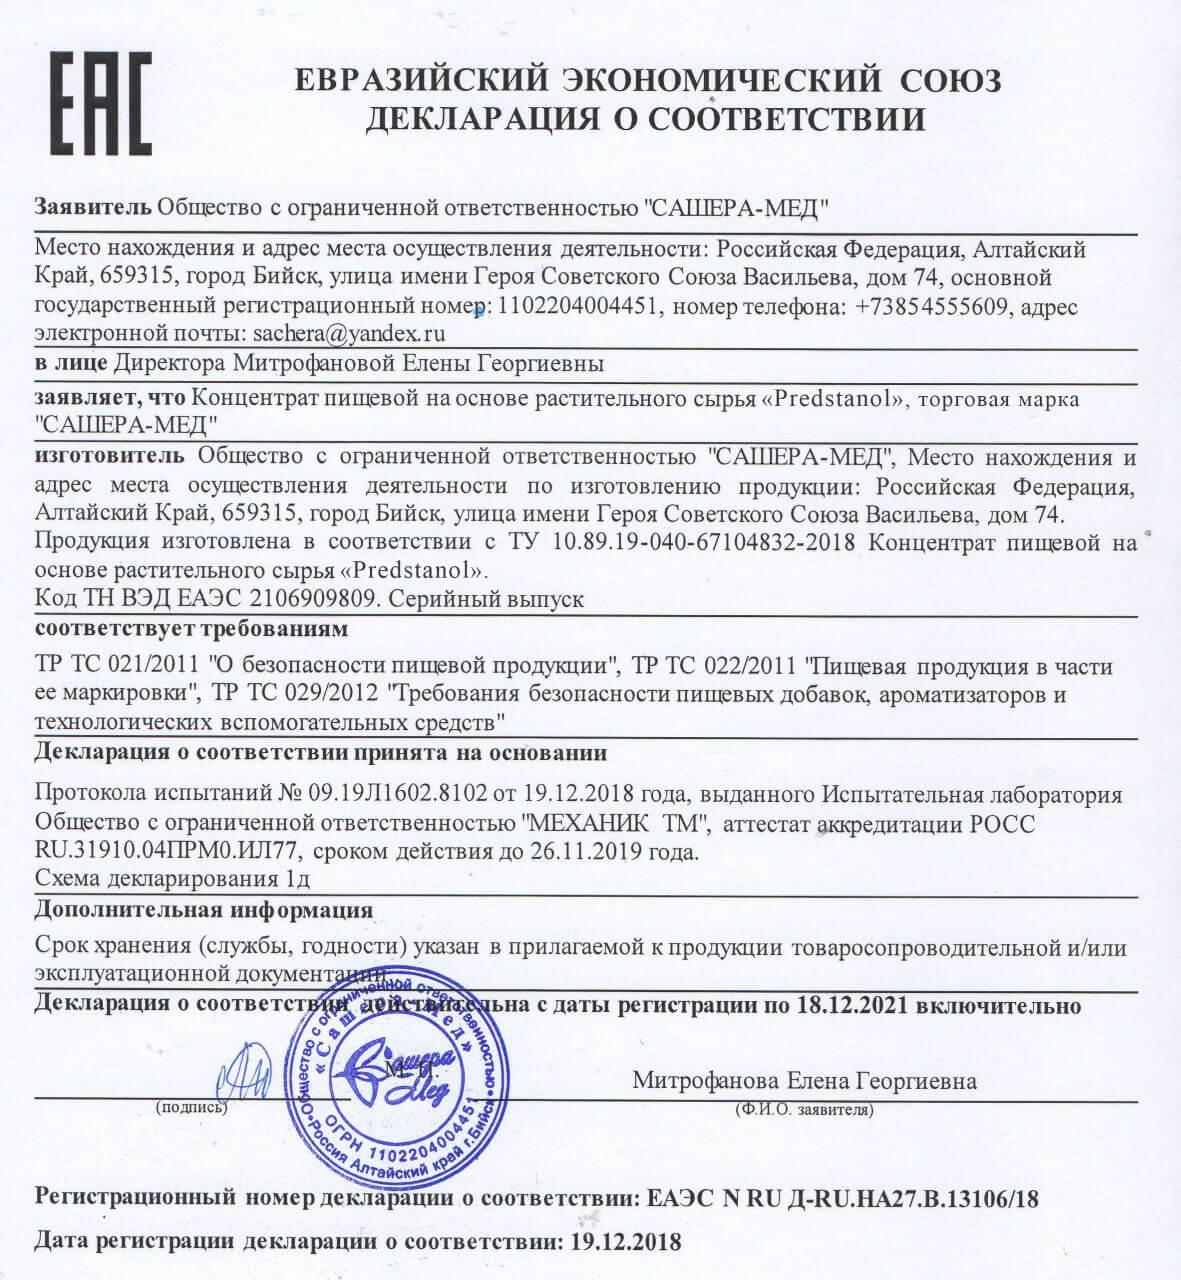 Сертификат на предстанол в Абакане